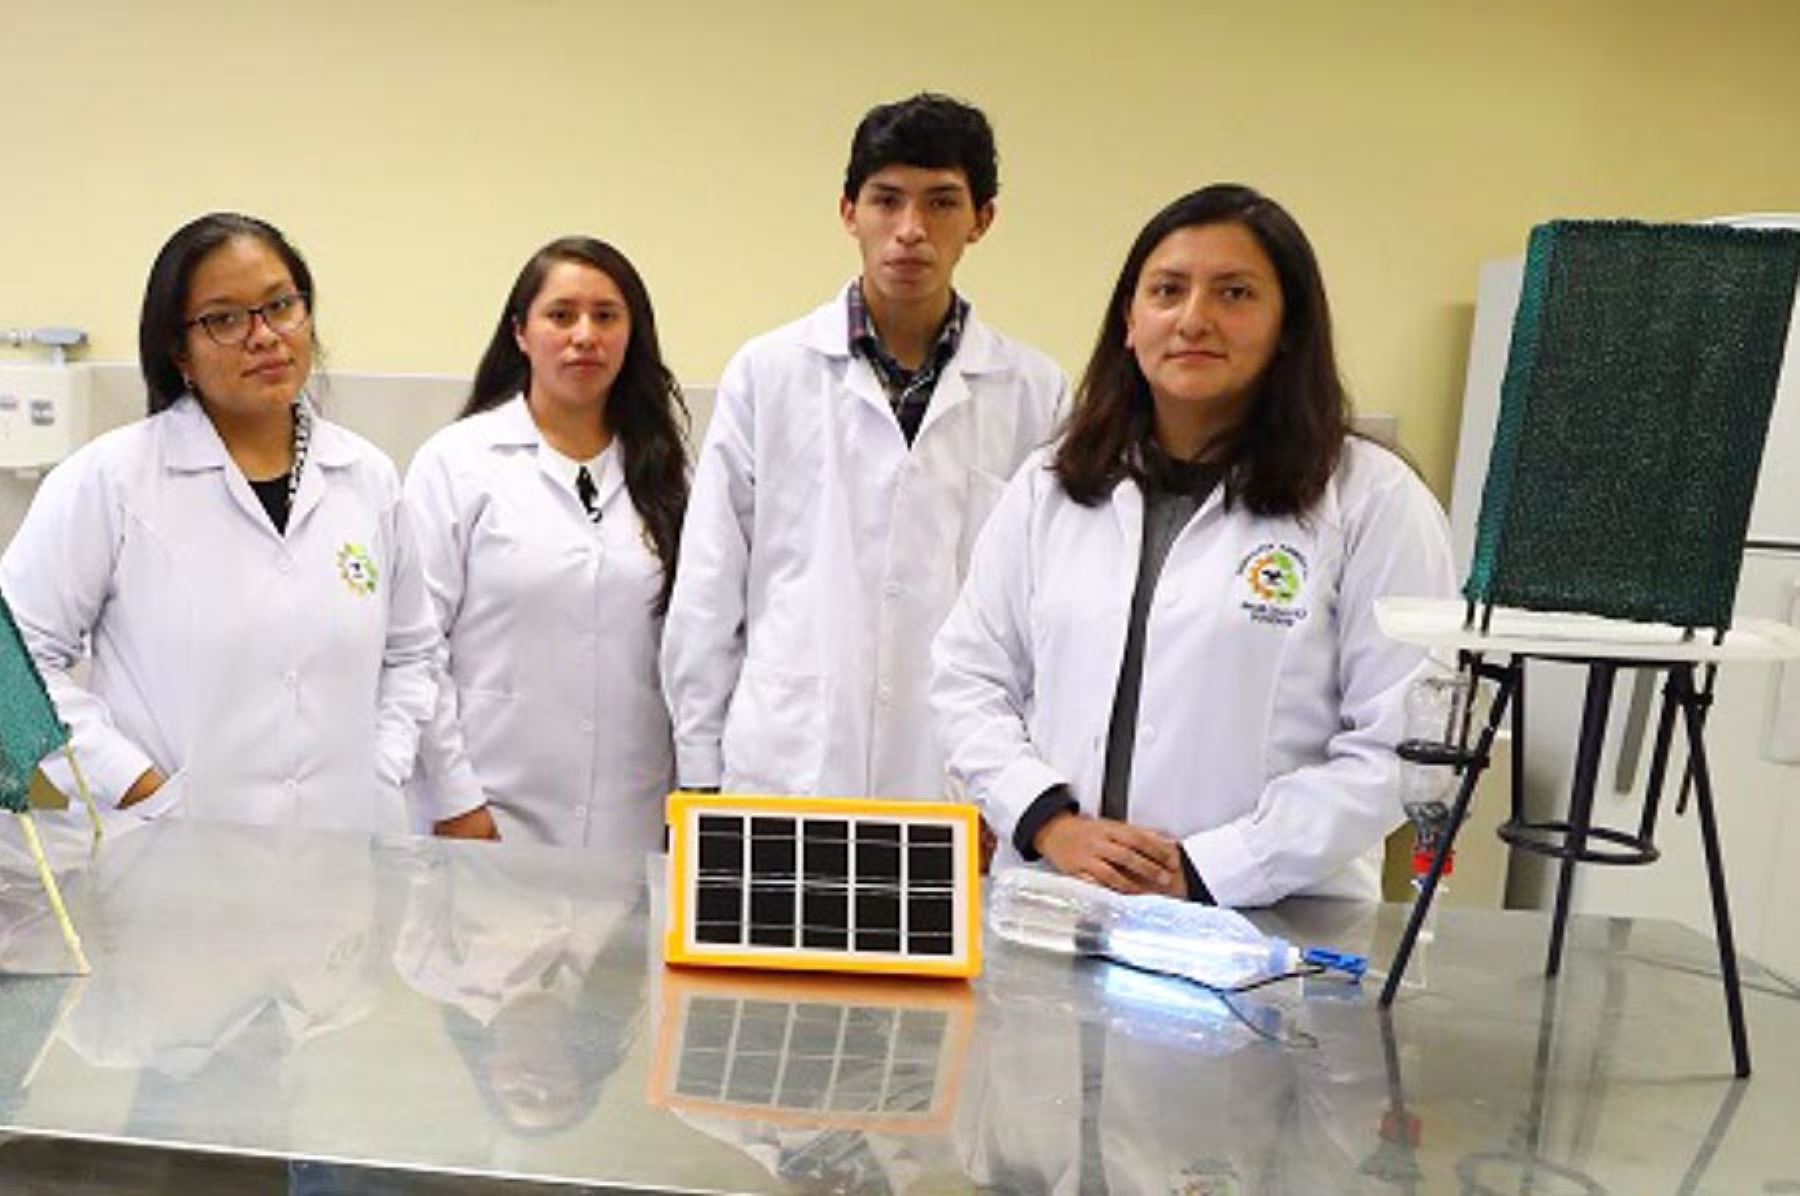 Los estudiantes de la Universidad Andina del Cusco, Nicoll Ochoa, Renzo Quiñones y Anabel Gonzales, fueron reconocidos por el Indecopi como “Jóvenes peruanos que se lucen” por el invento de un aparato que purifica el agua captada de la neblina. Foto: Indecopi